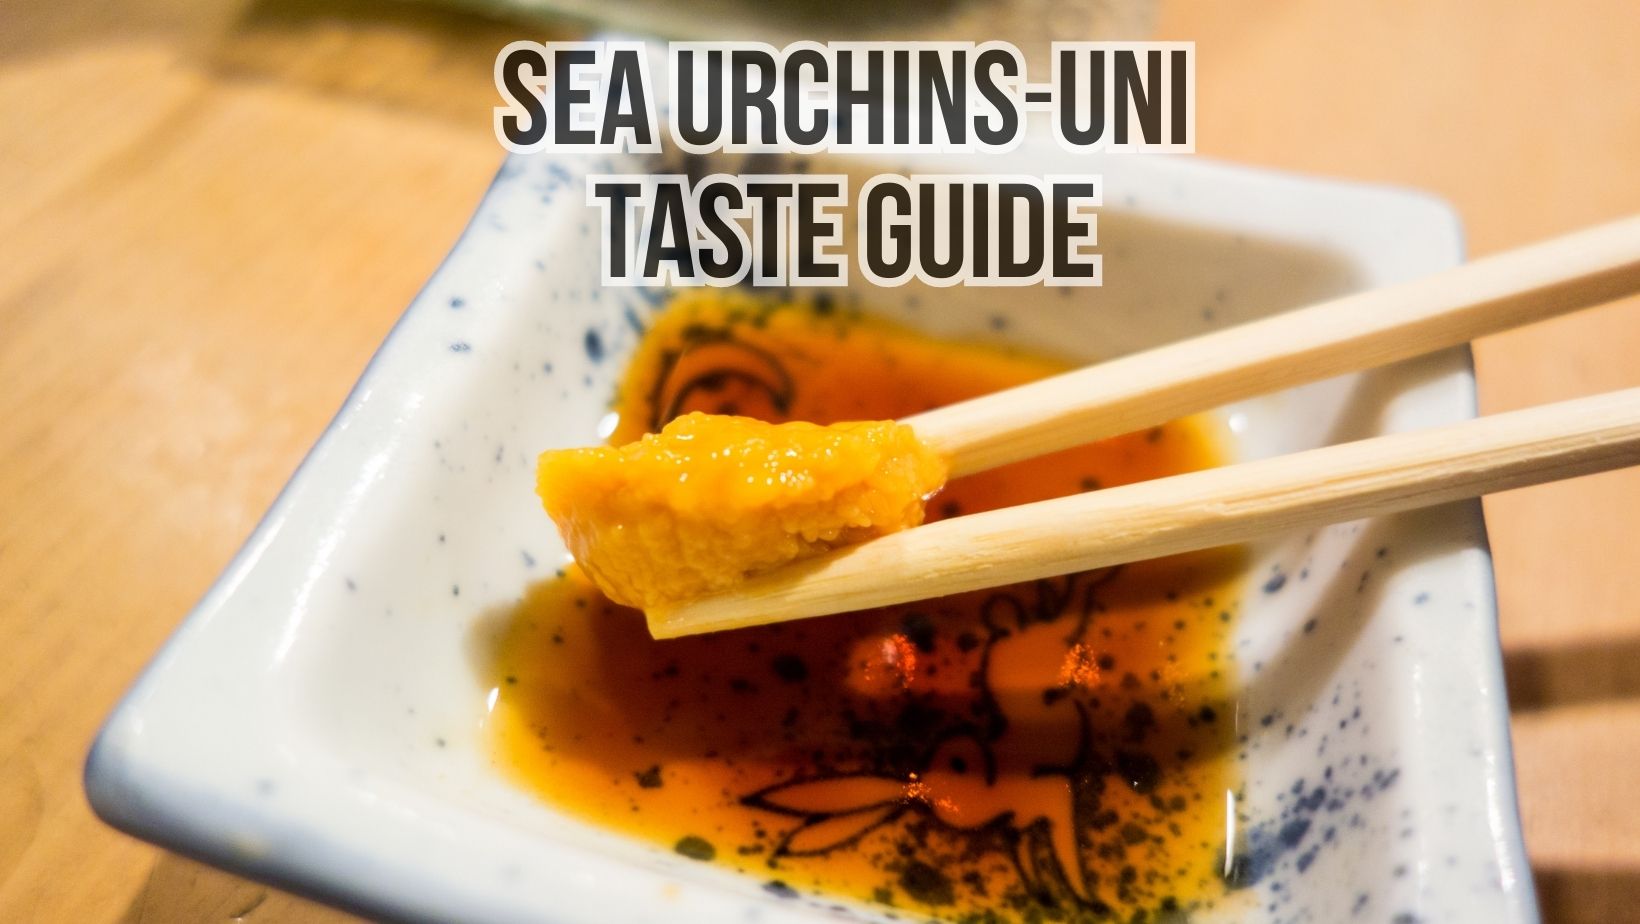 Sea Urchins Taste